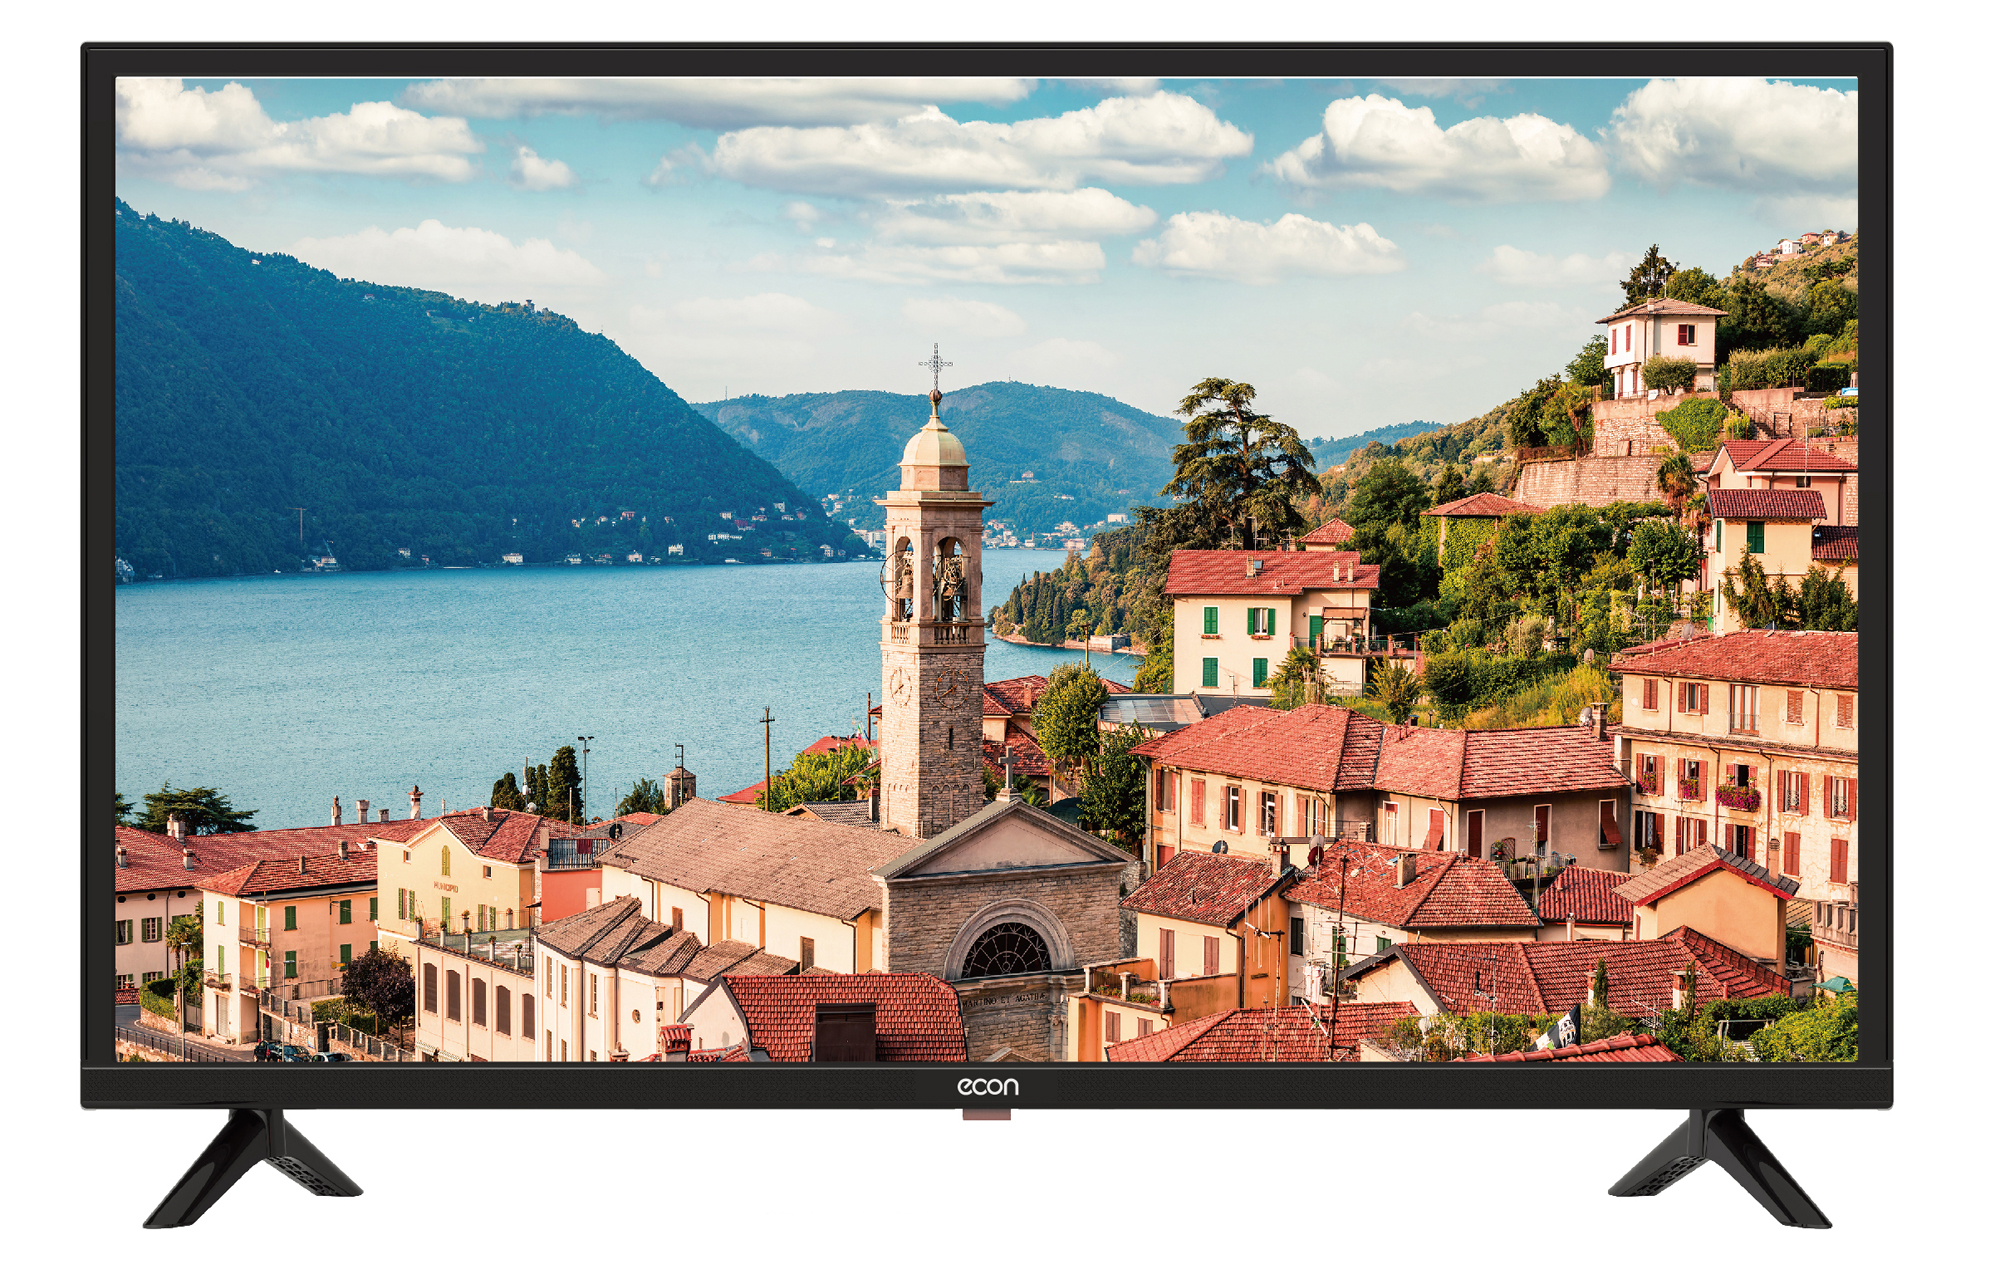 Картинка Smart телевизор ECON EX-40FS009B по разумной цене купить в интернет магазине mall.su